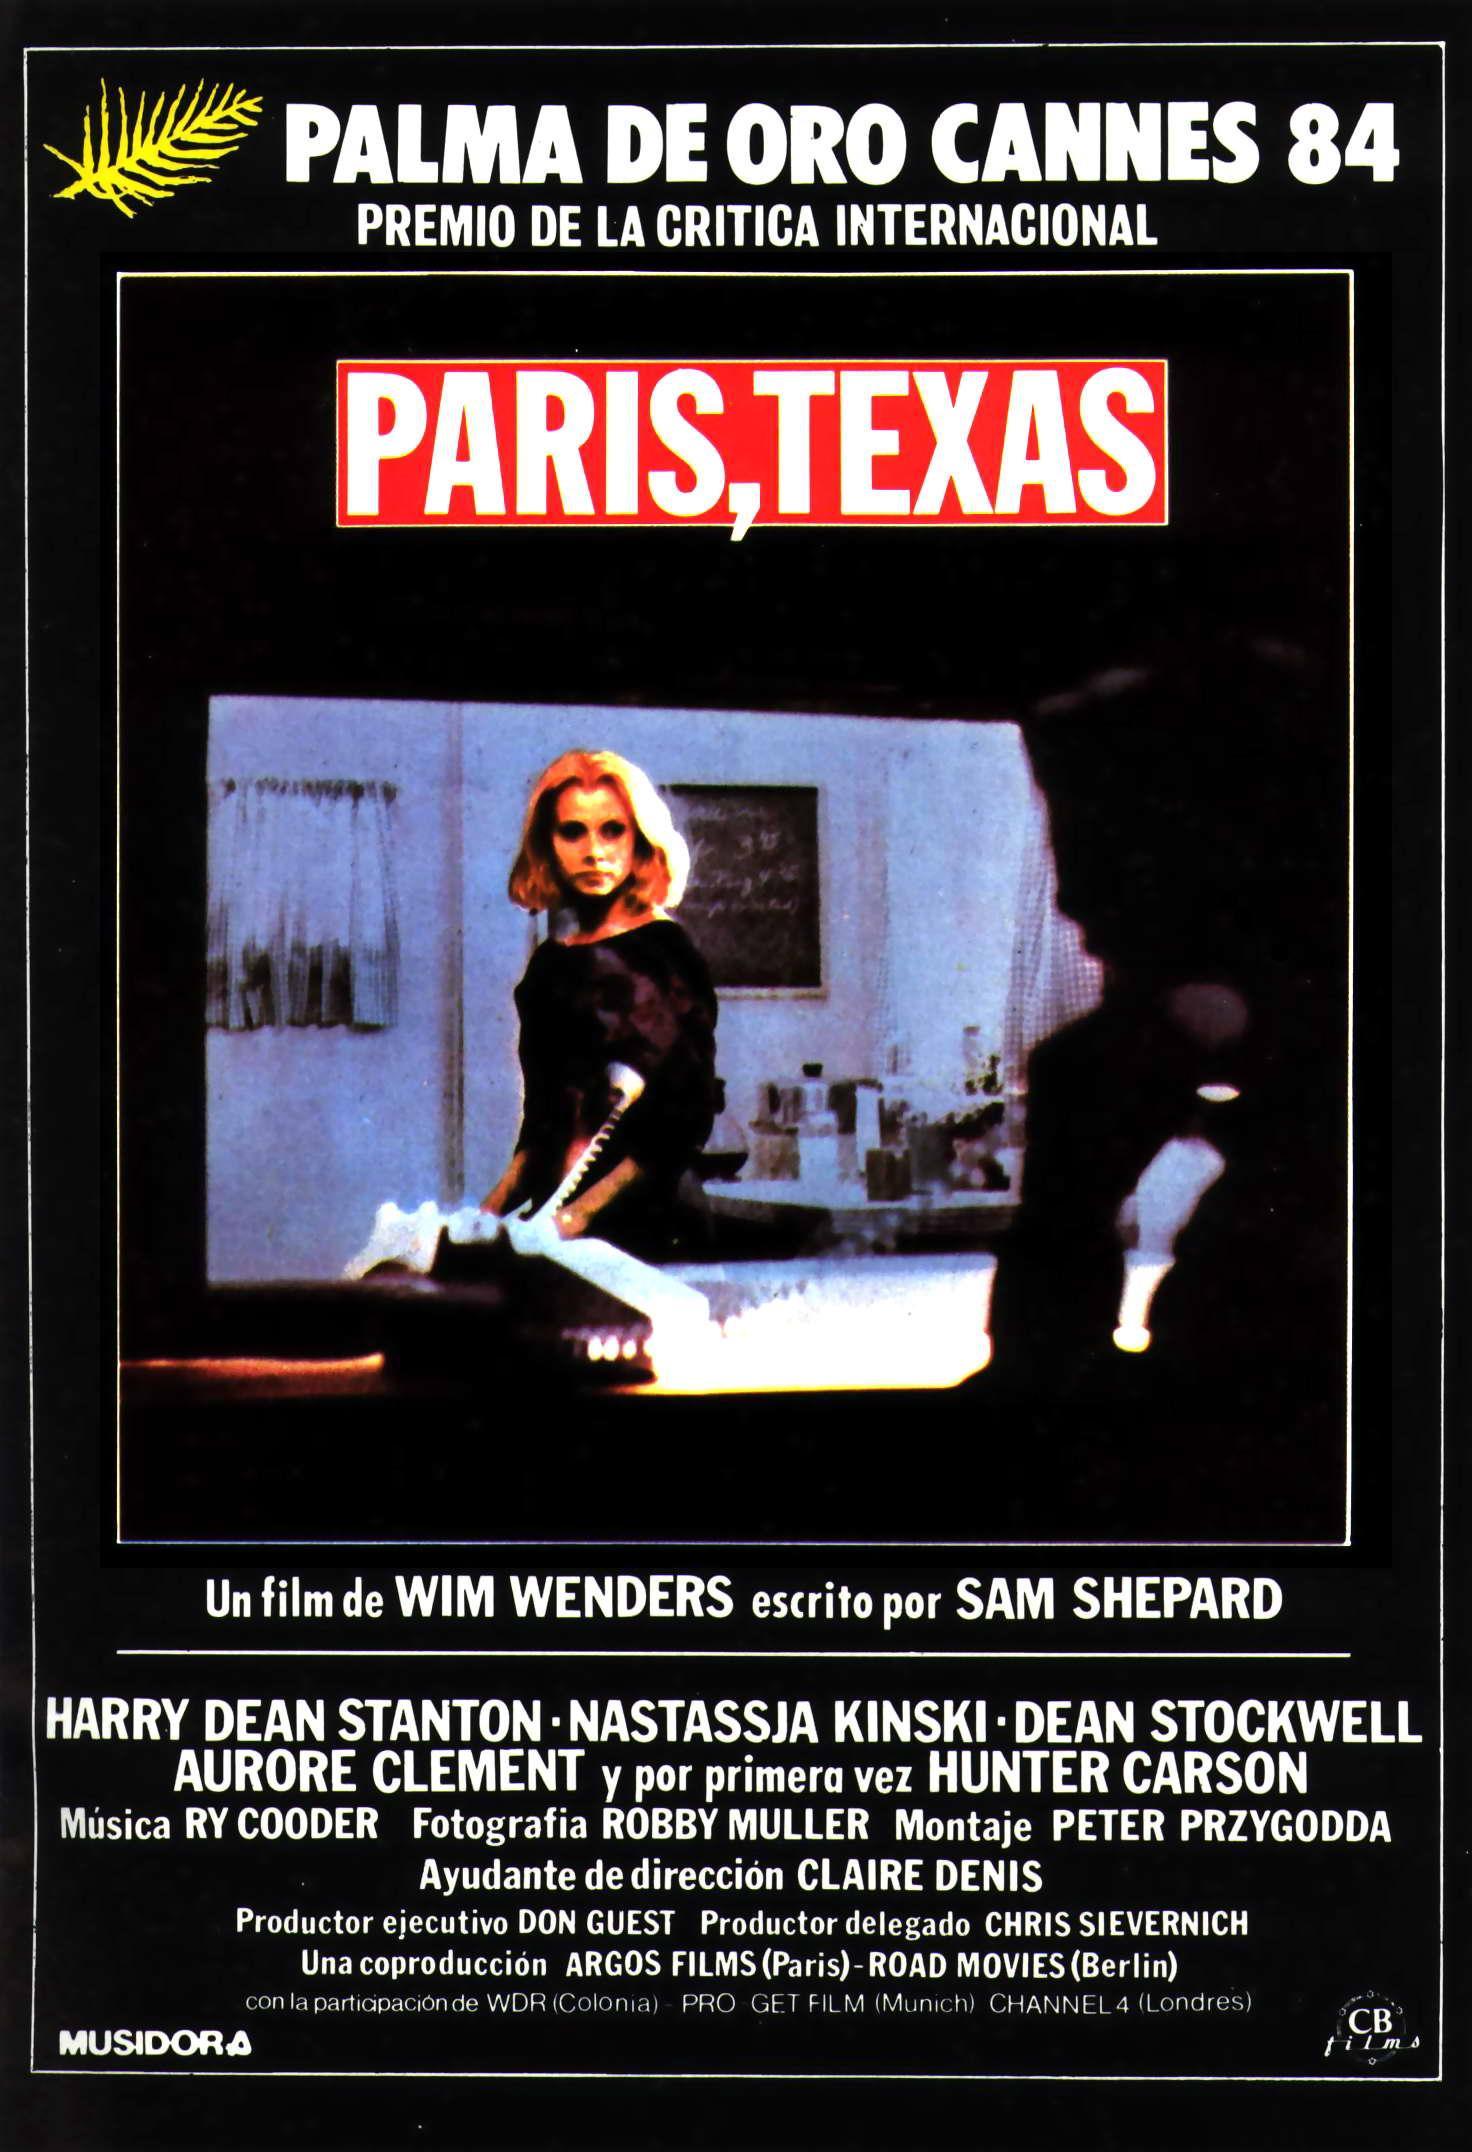 Постер фильма Париж, Техас | Paris, Texas